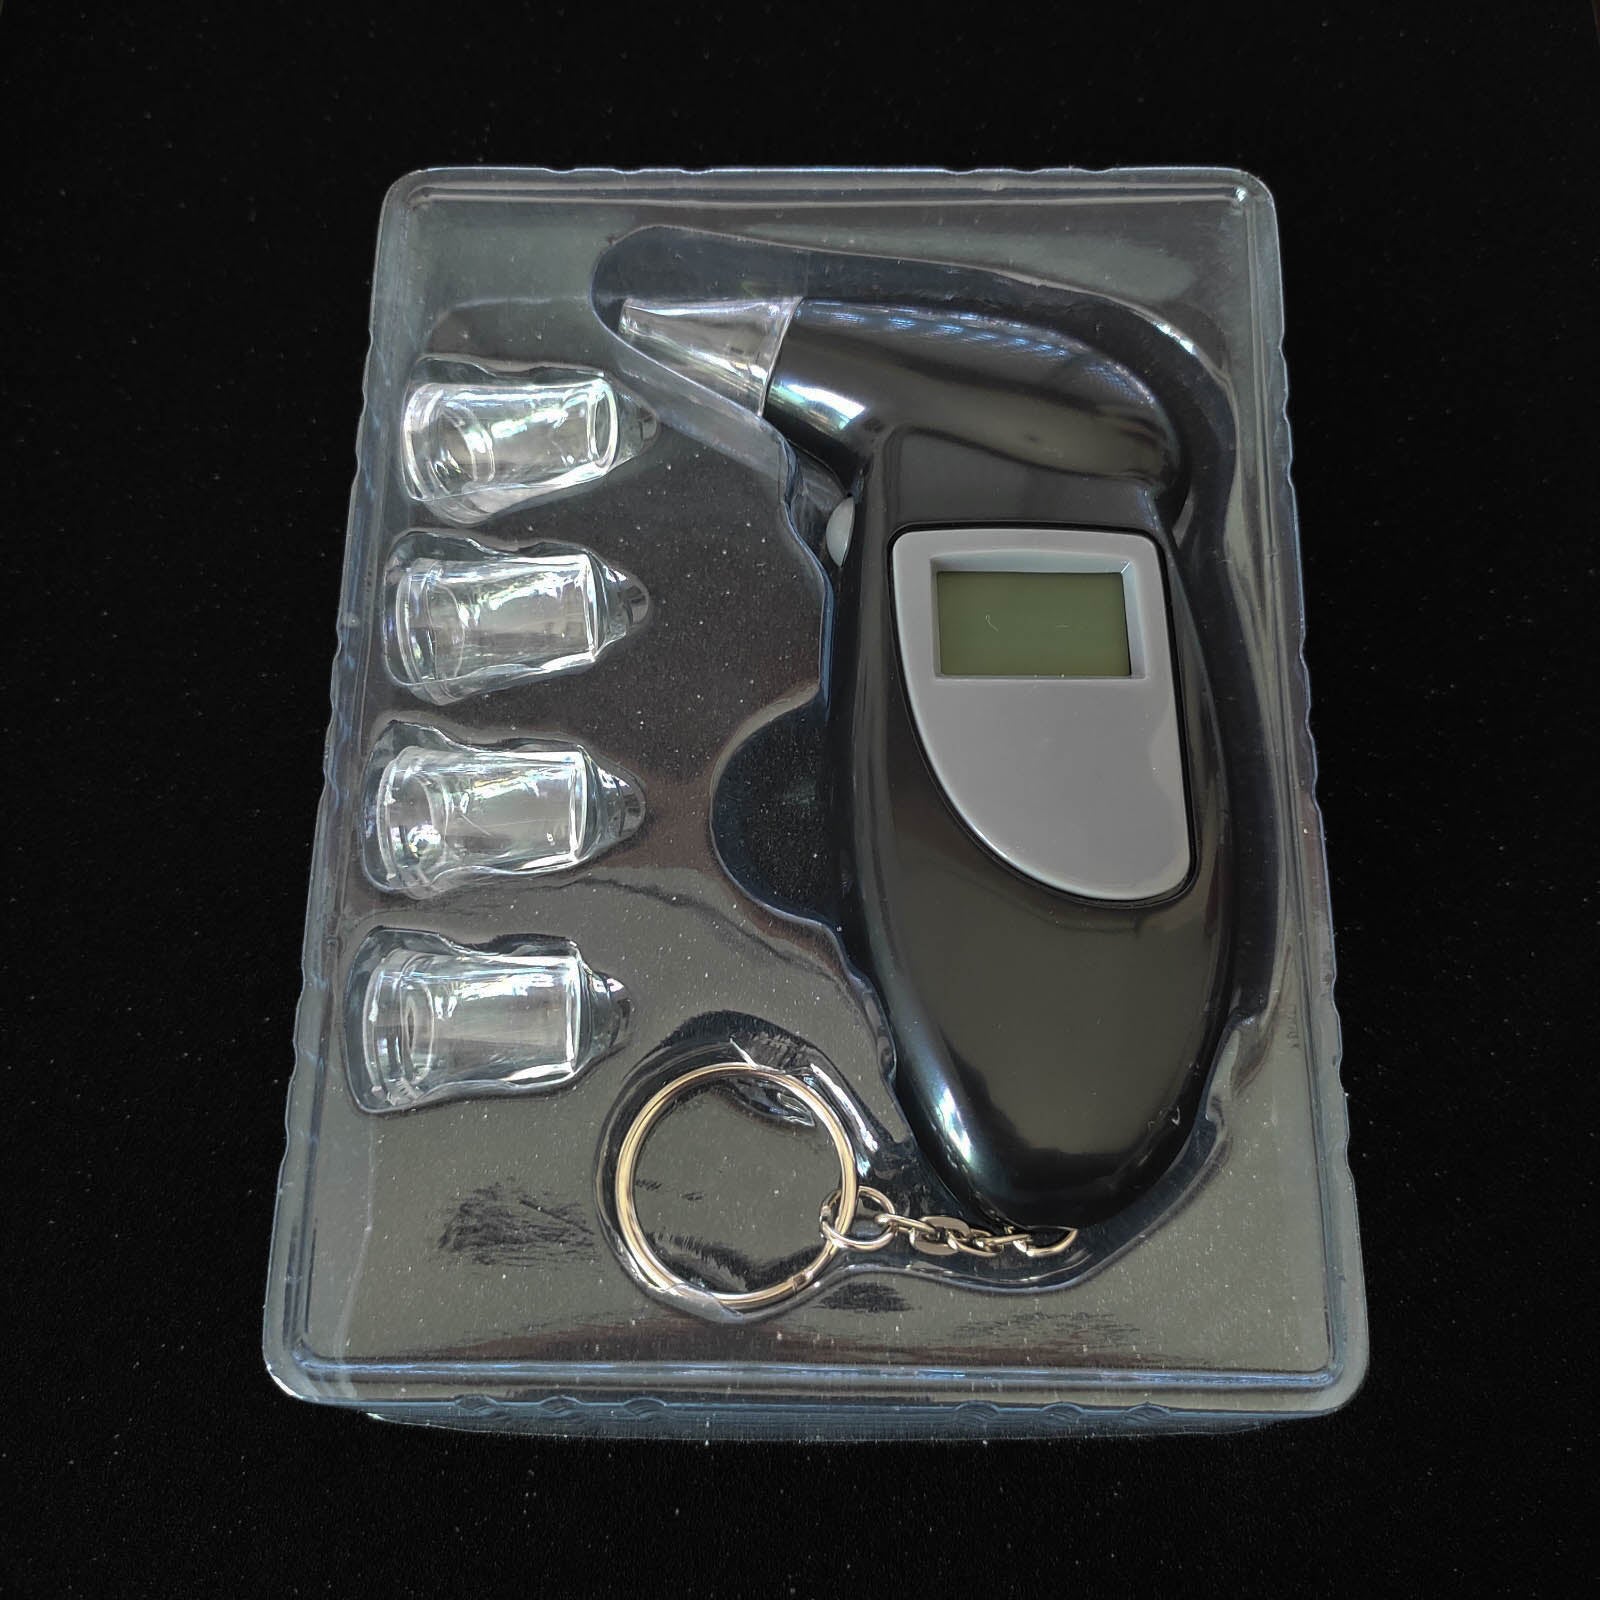 Medidor de Álcool dentro da caixa com 5 boquilhas diferentes que irão ser utilizadas para a realização do teste